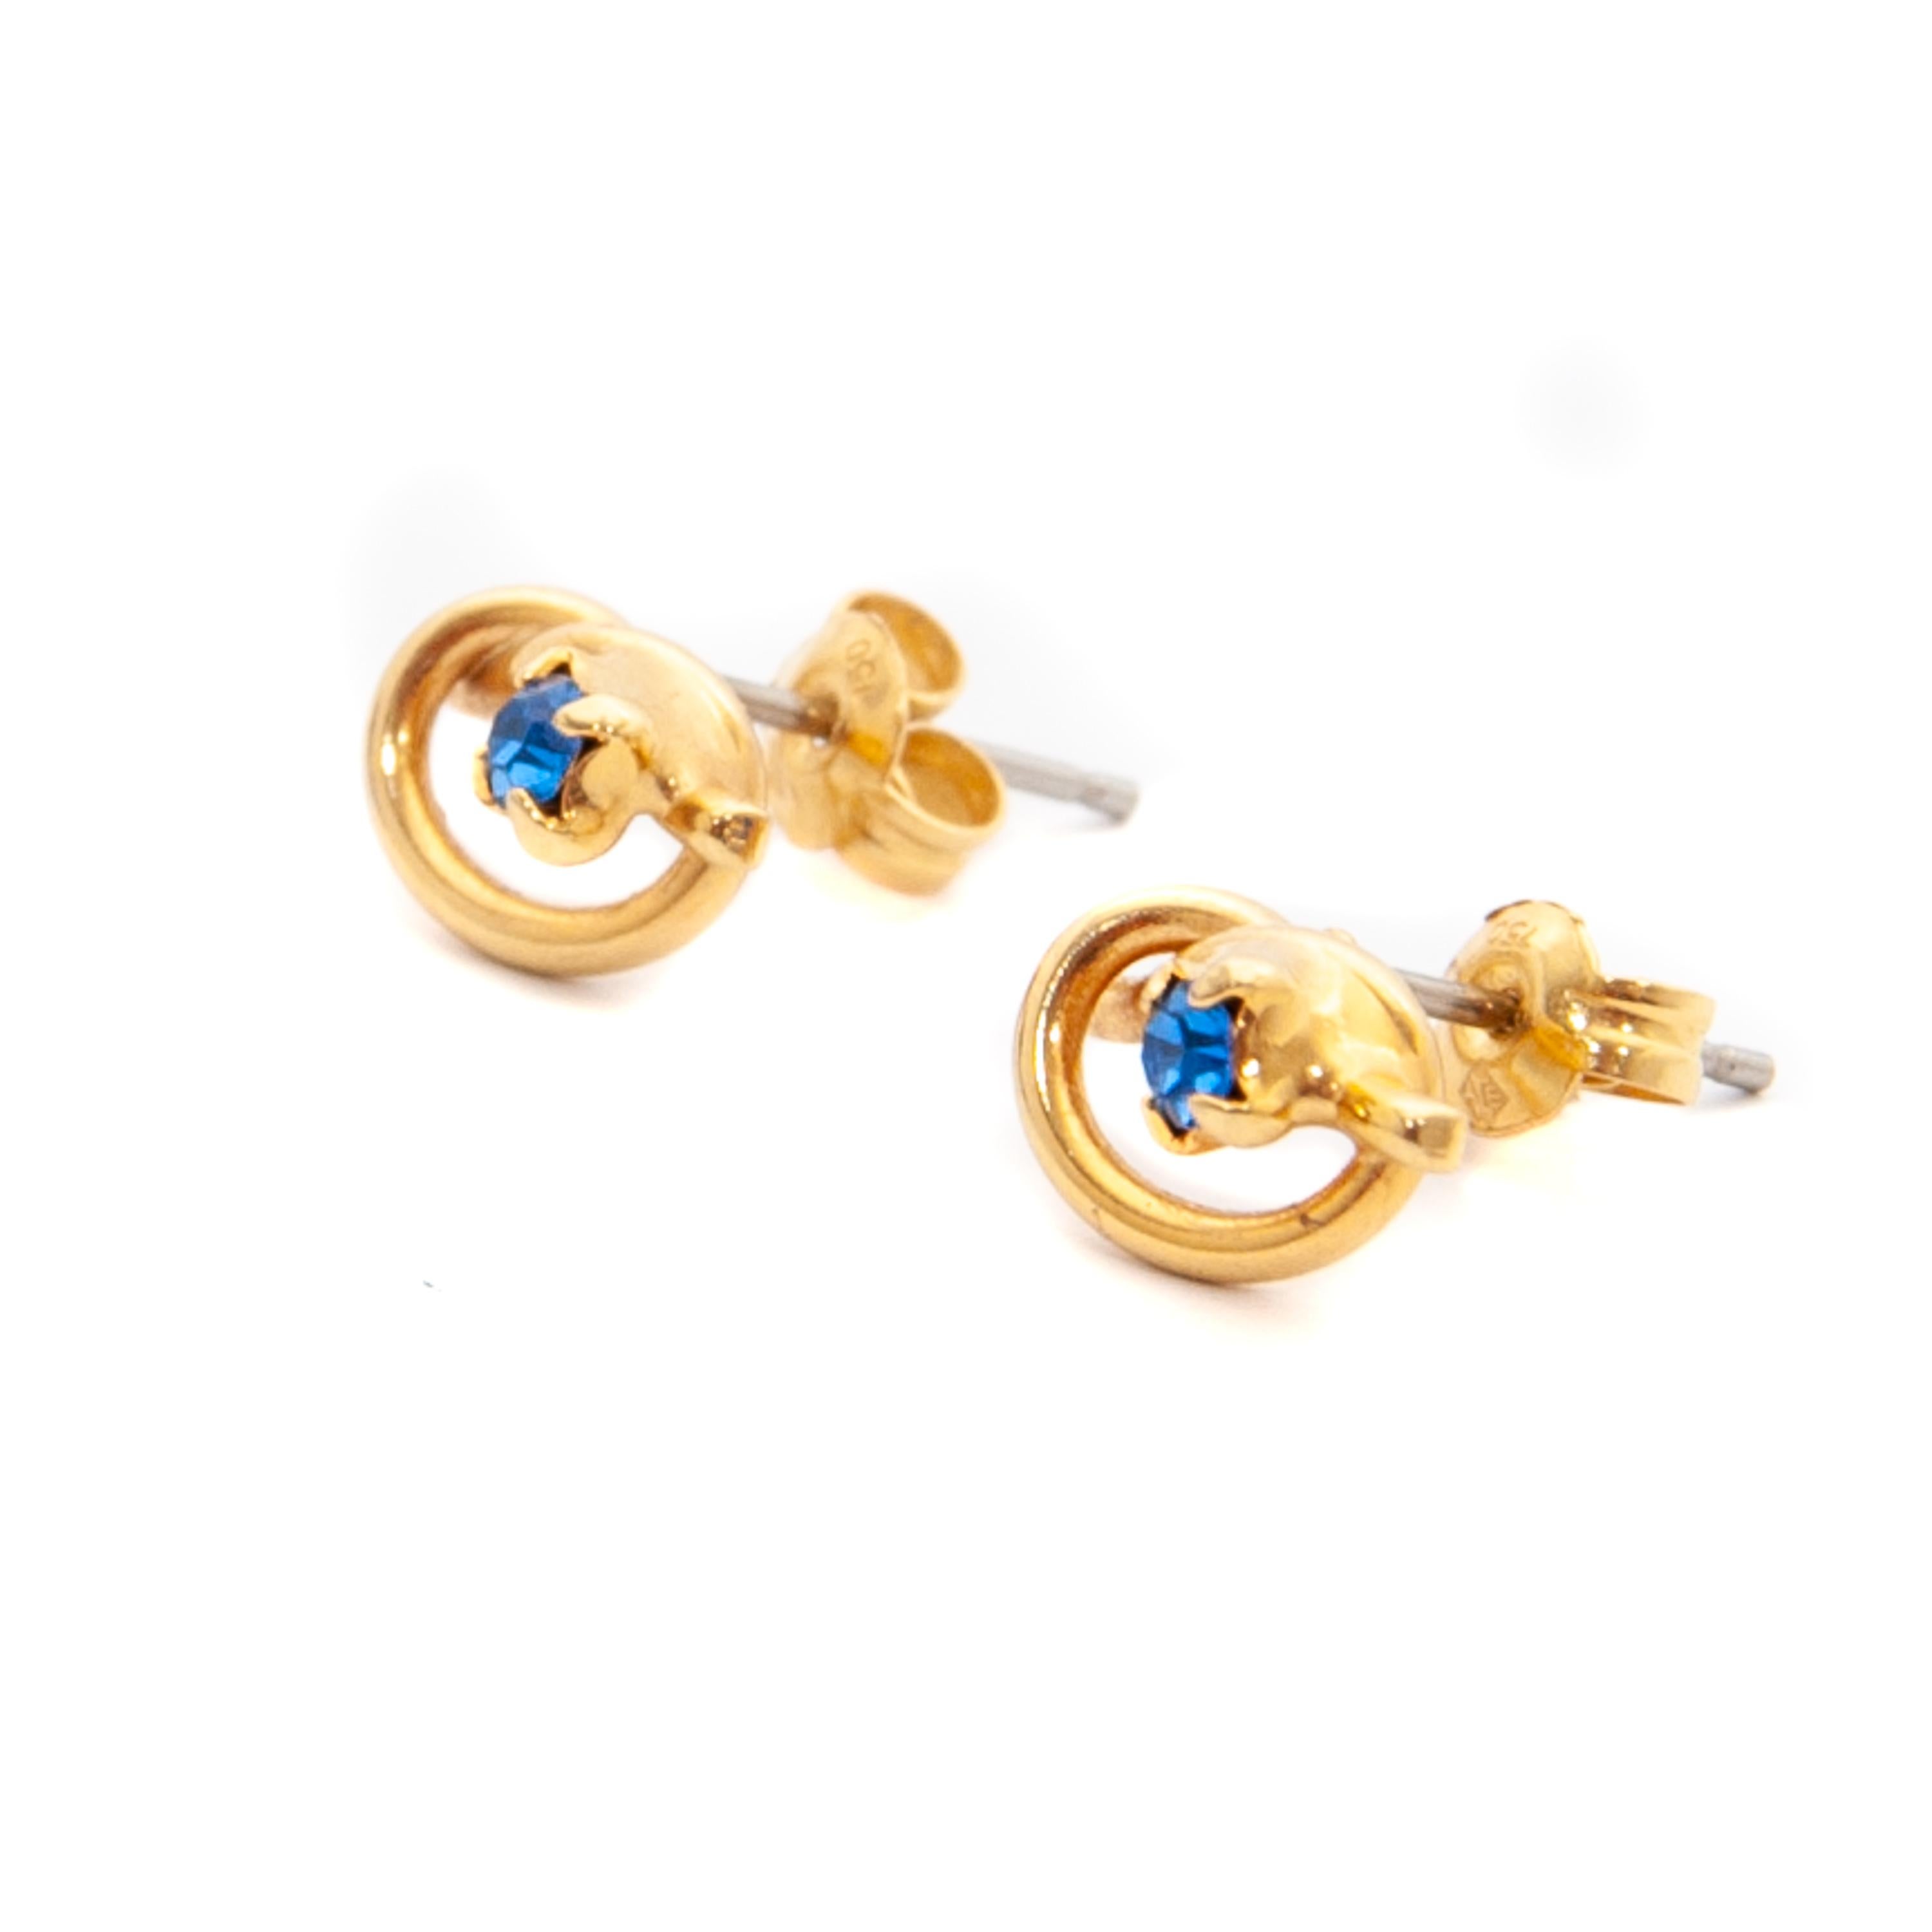 Diese hübschen Saphir-Liebesknoten-Ohrstecker sind aus 18 Karat Gelbgold gefertigt. Die Ohrringe sind mit wunderschönen blauen Saphiren im Brillantschliff besetzt. Die Saphire sind in der geknoteten Fassung aus 18 Karat Gold fest mit Zacken